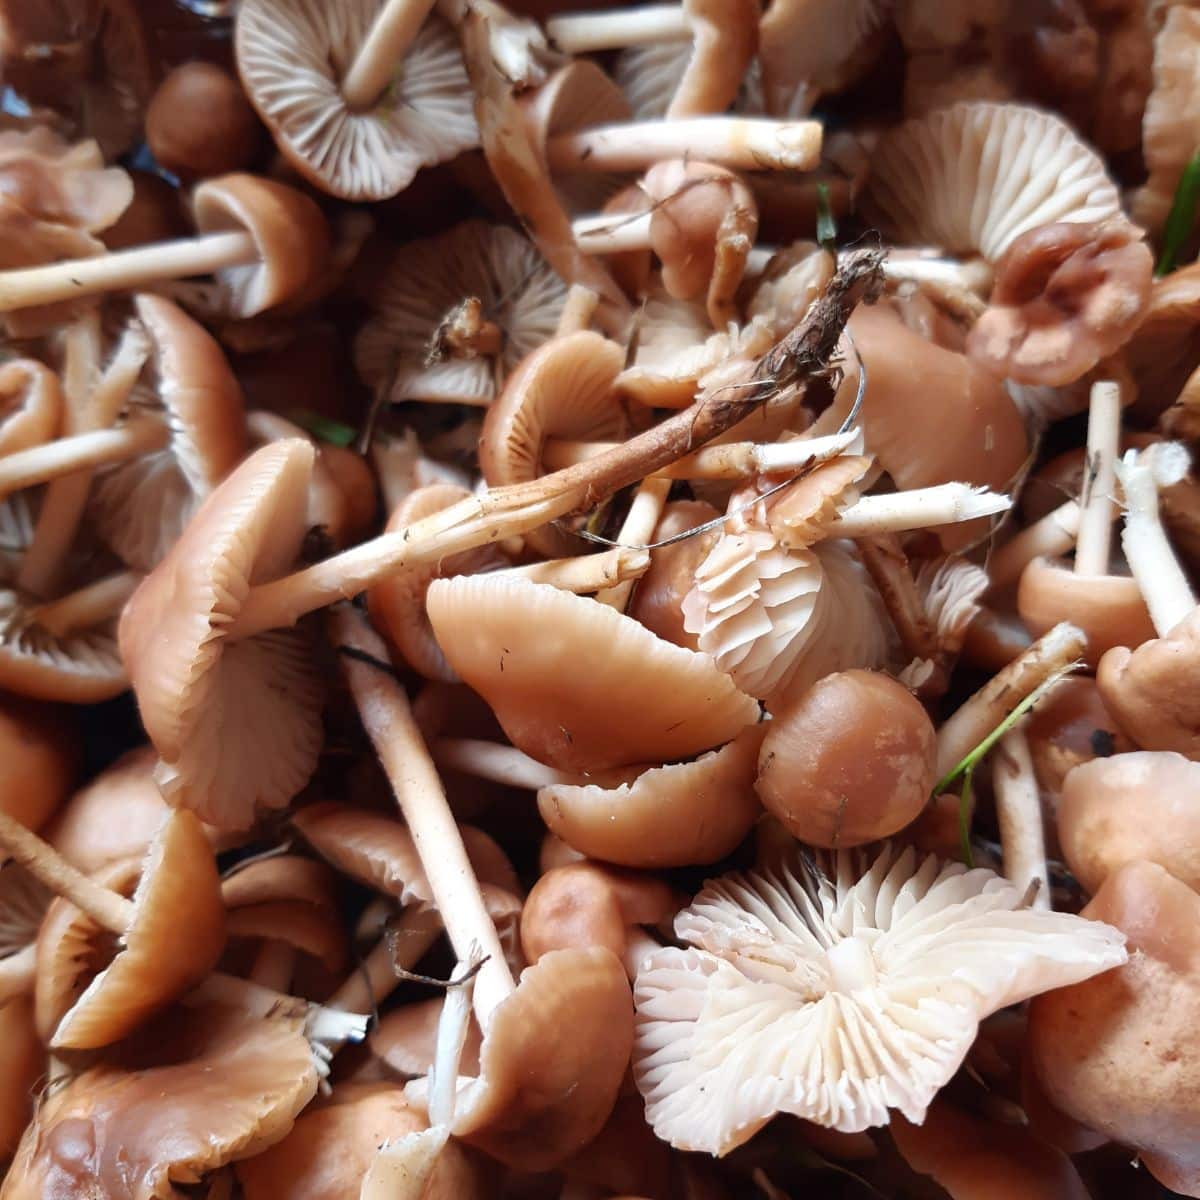 fairy ring mushrooms harvested 